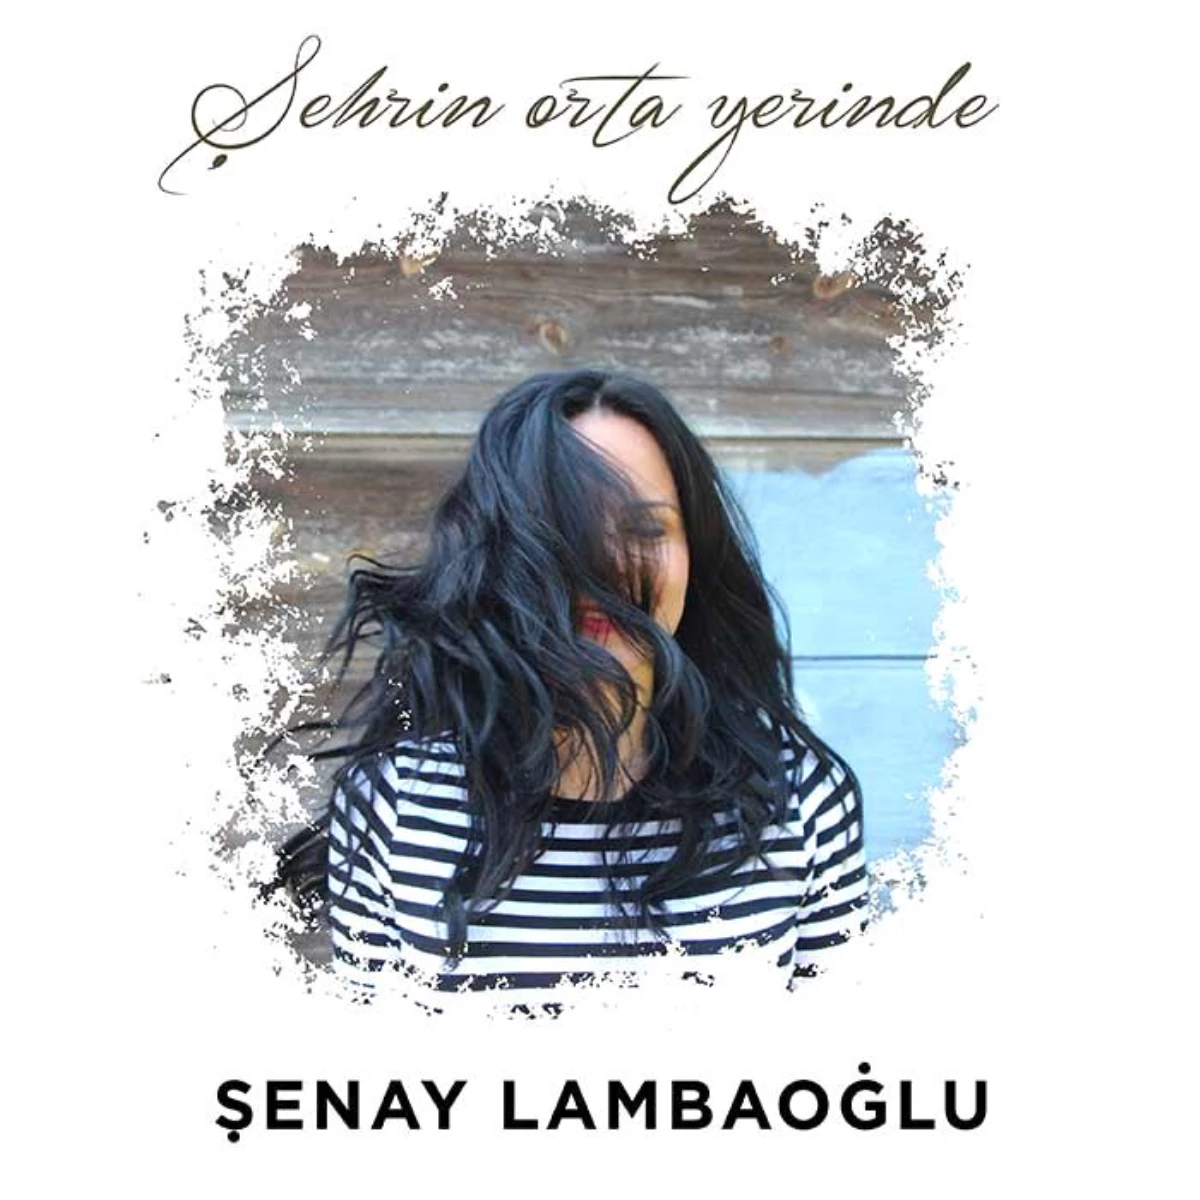 Şenay Lambaoğlu\'nun yeni single\'ı \'Şehrin Orta Yerinde\' yayında